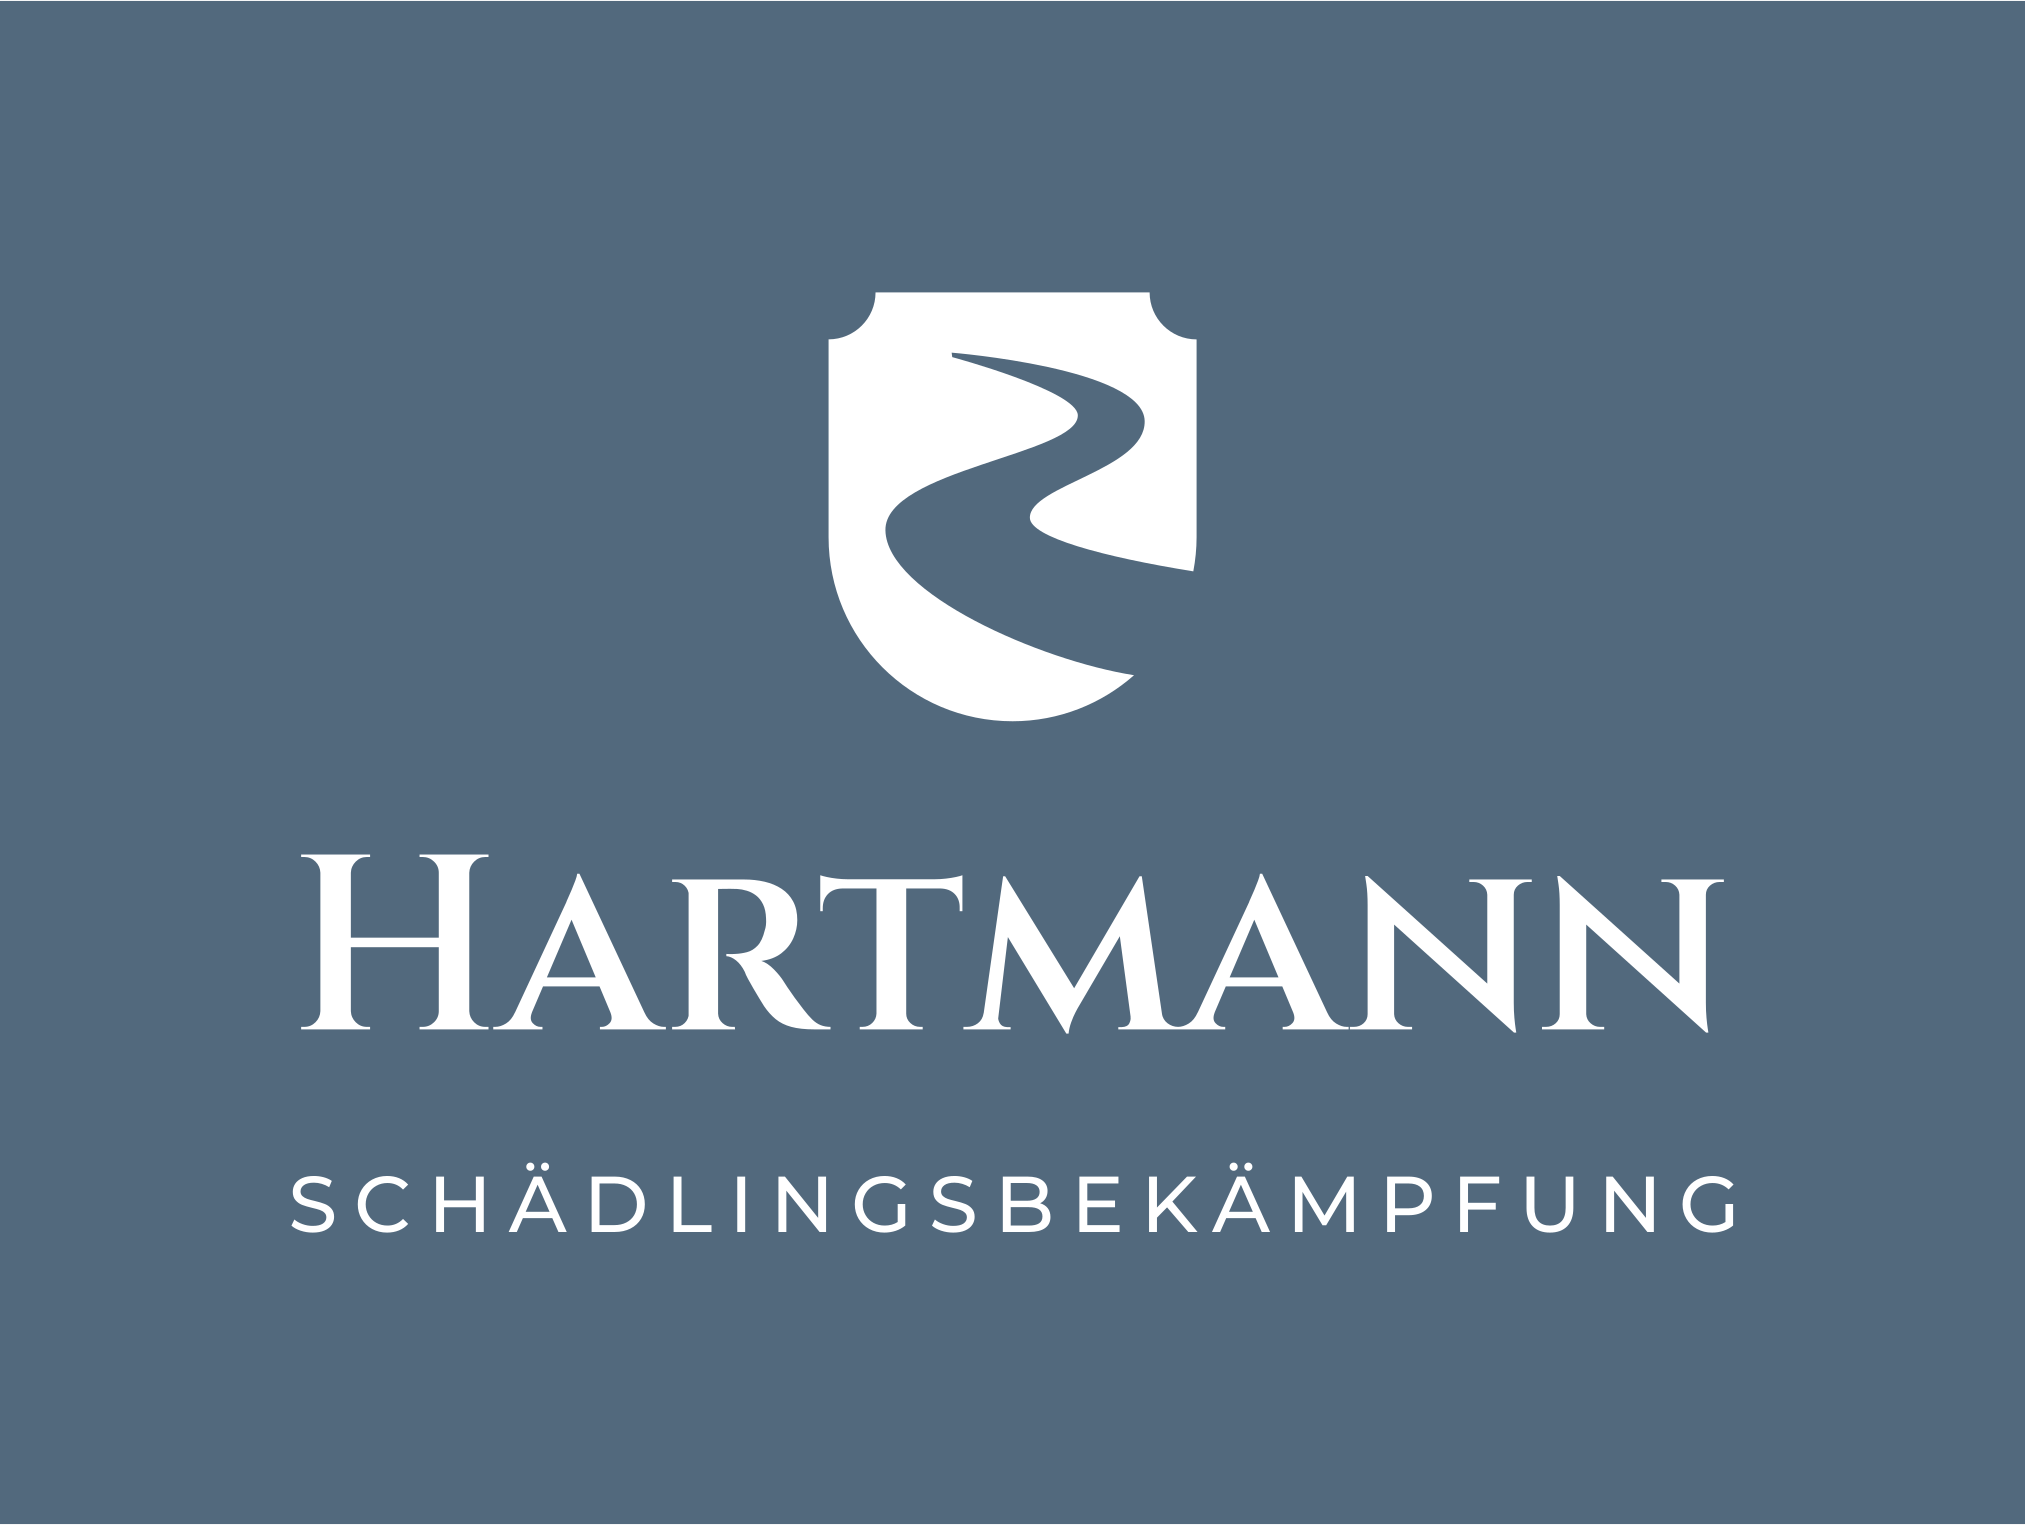 HARTMANN! | Der Löwe unter den Schädlingsbekämpfern Logo